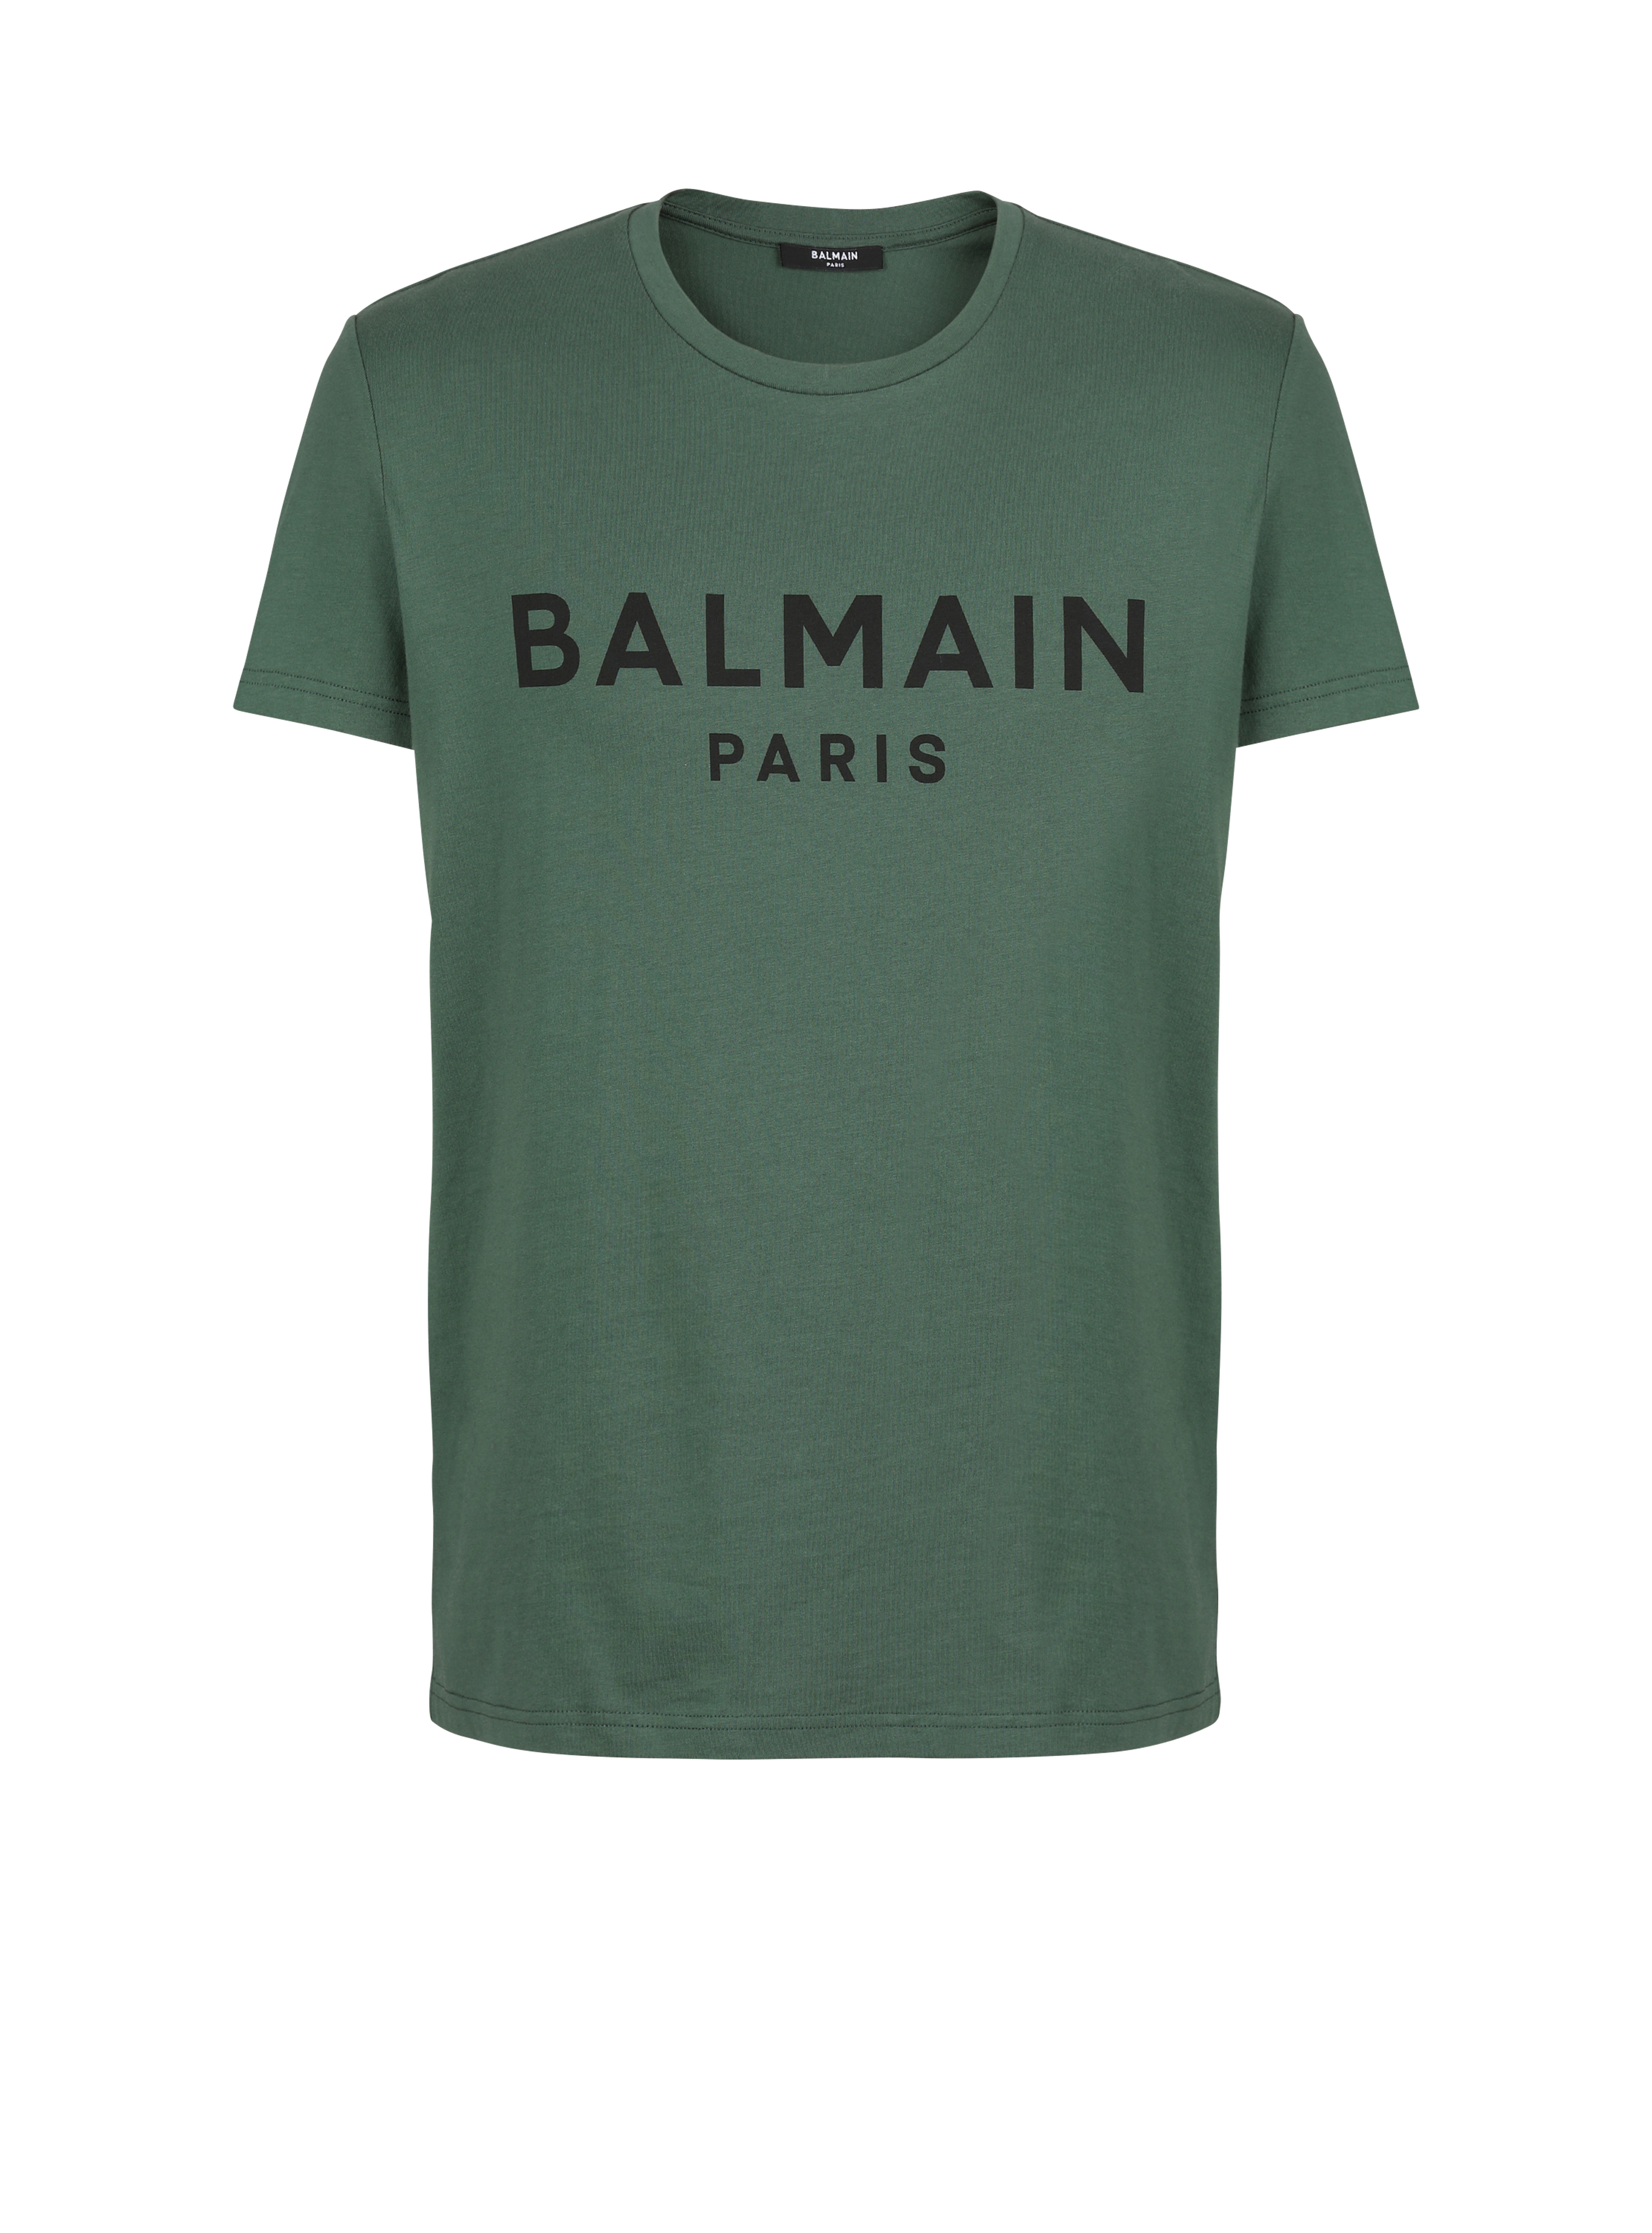 T-shirt in cotone con logo Balmain Paris, verde